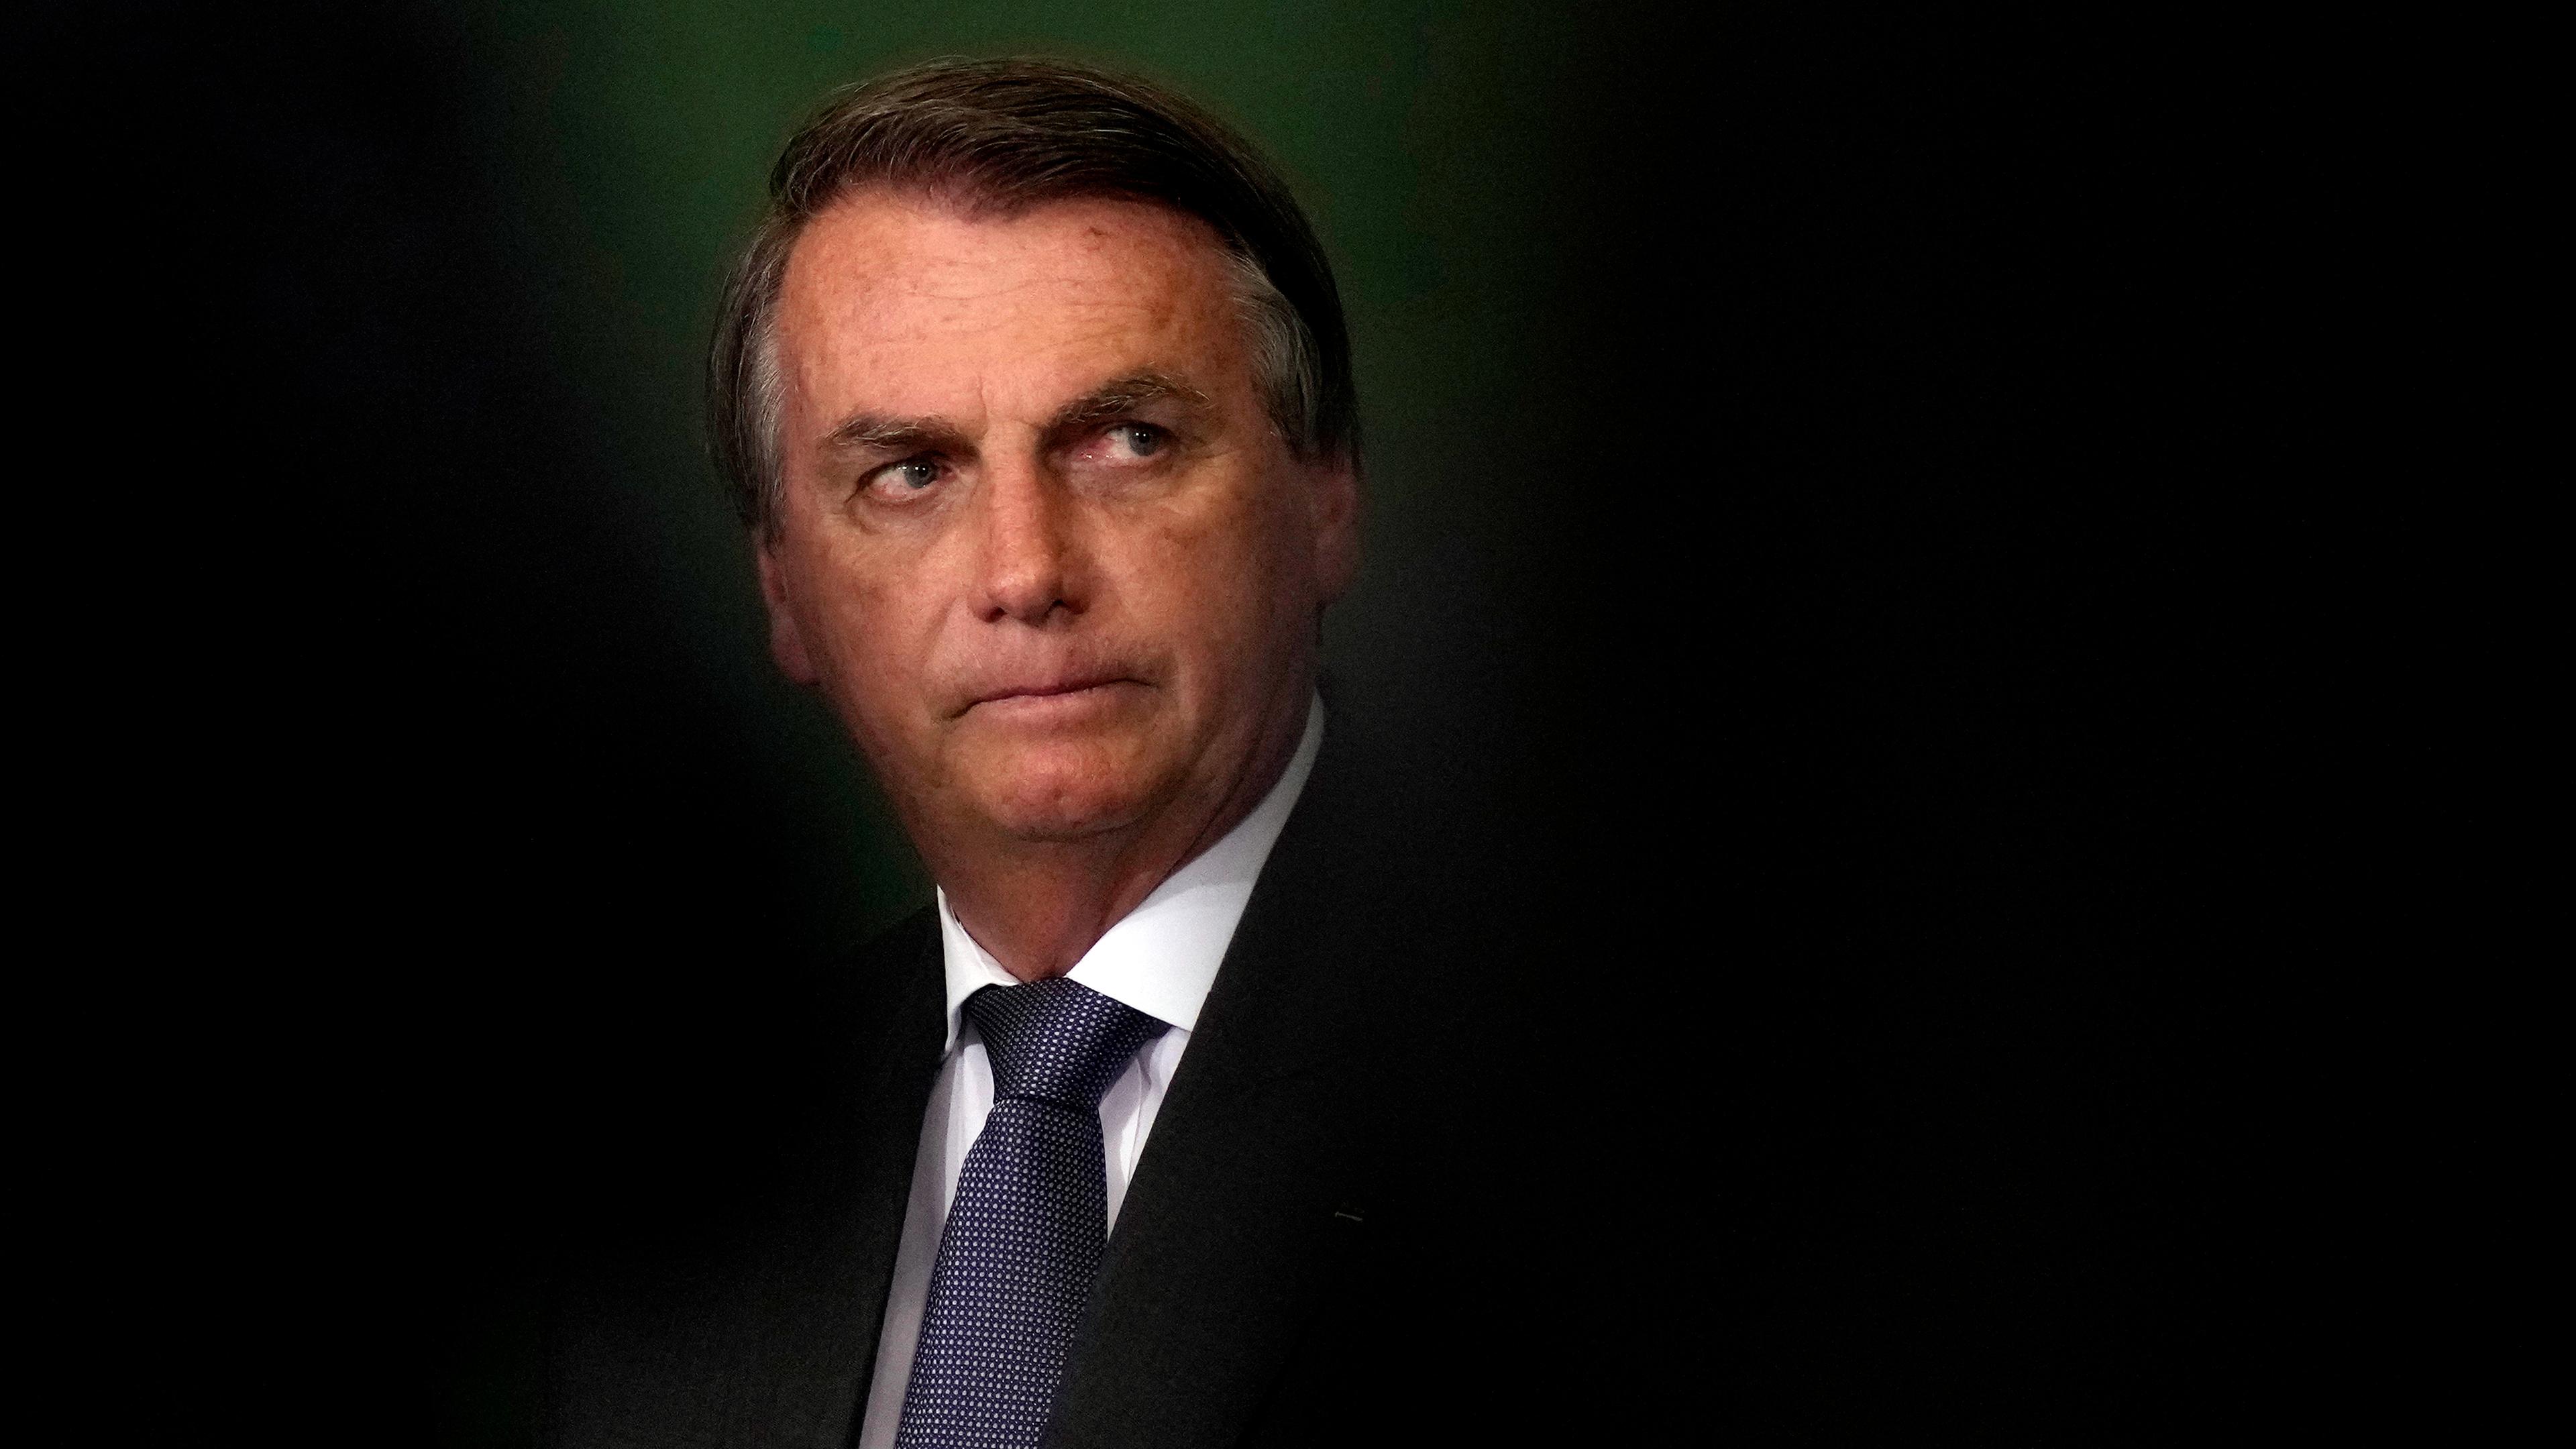 Jair Bolsonaro am 25.10.2021 in Brasilia (Brasilien)